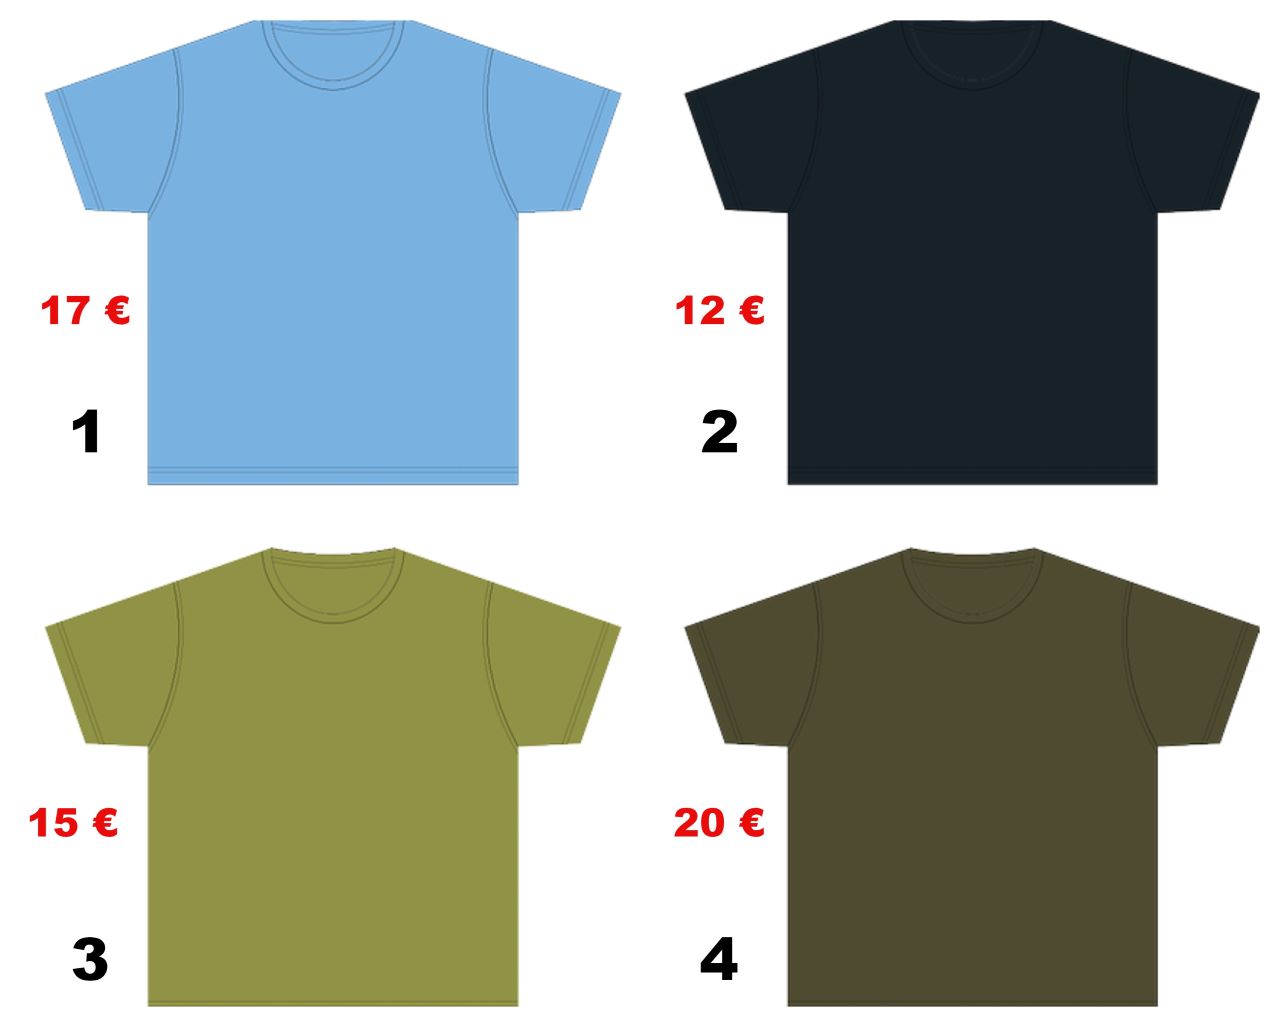 Ilustracijom su prikazane četiri majice kratkih rukava. Prva je svijetloplava i stoji 17 eura, druga je tamnoplava i stoji 12 eura, treća je svijetlozelena i stoji 15 eura i četvrta je tamnozelena i stoji 20 eura.